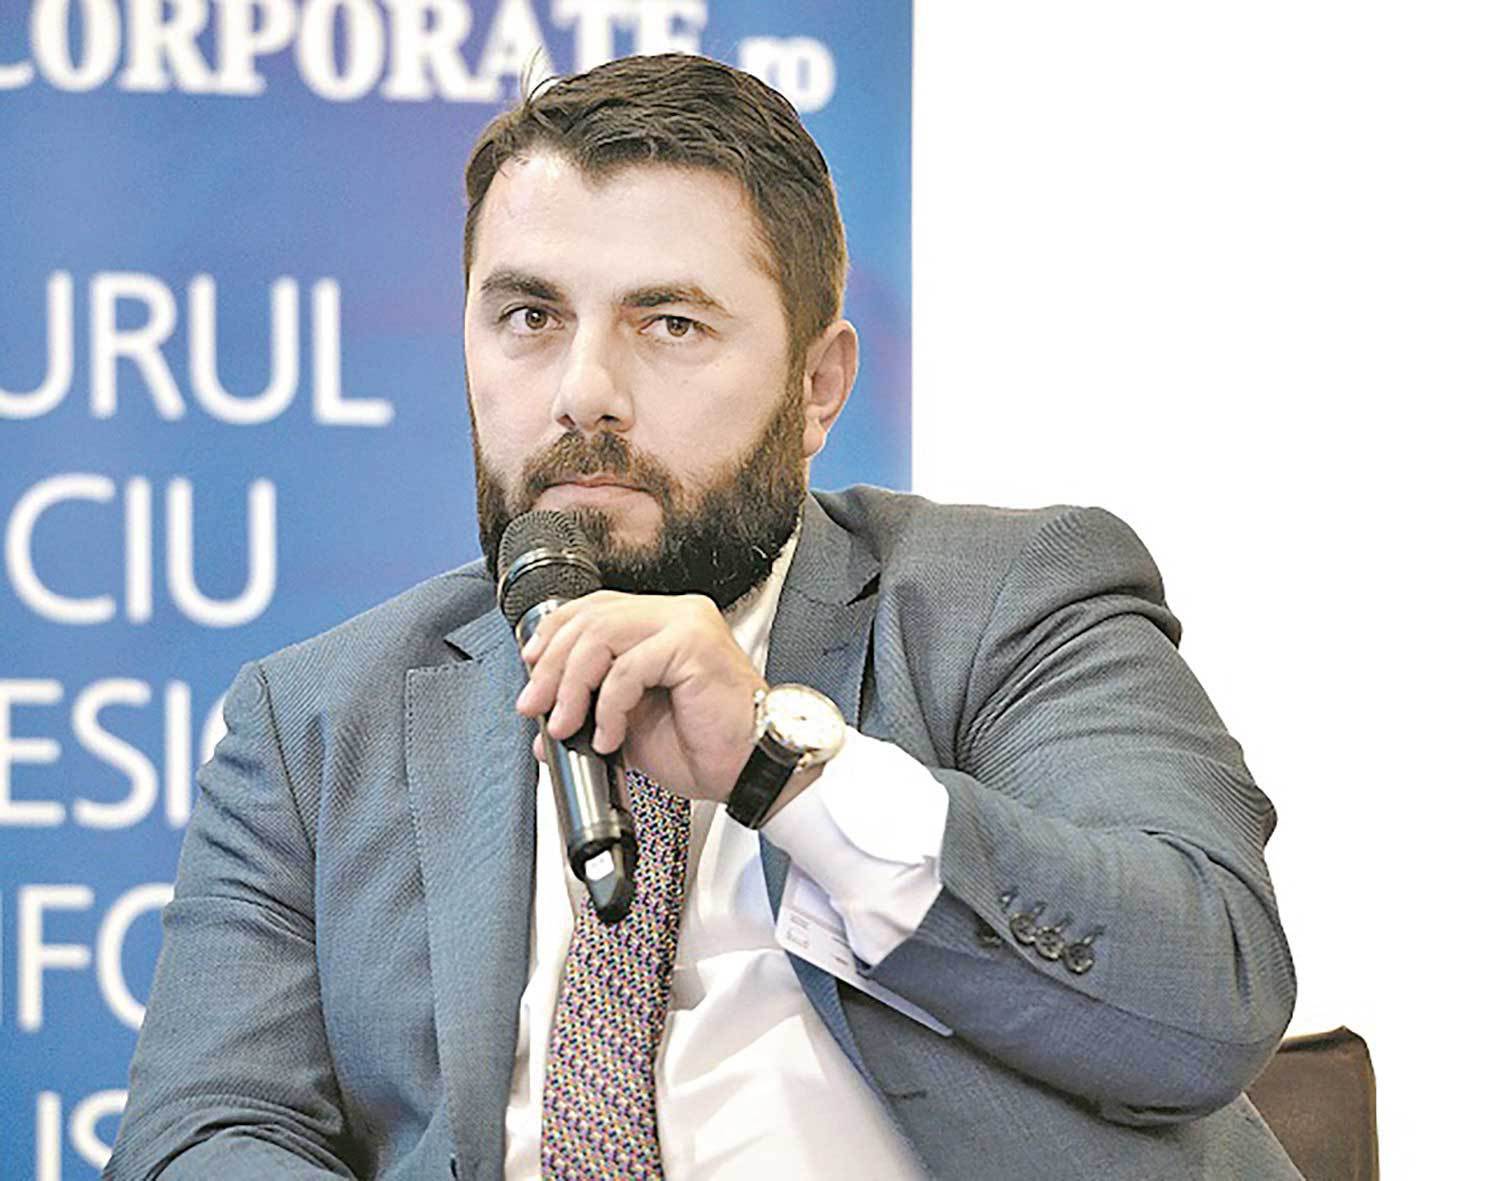 ALEPH BUSINESS. Cum a ajuns Răzvan Iorgu, dintr-un call center la începutul carierei, la conducerea CBRE, unul dintre cei mai mari consultanţi imobiliari de pe piaţă. VIDEO